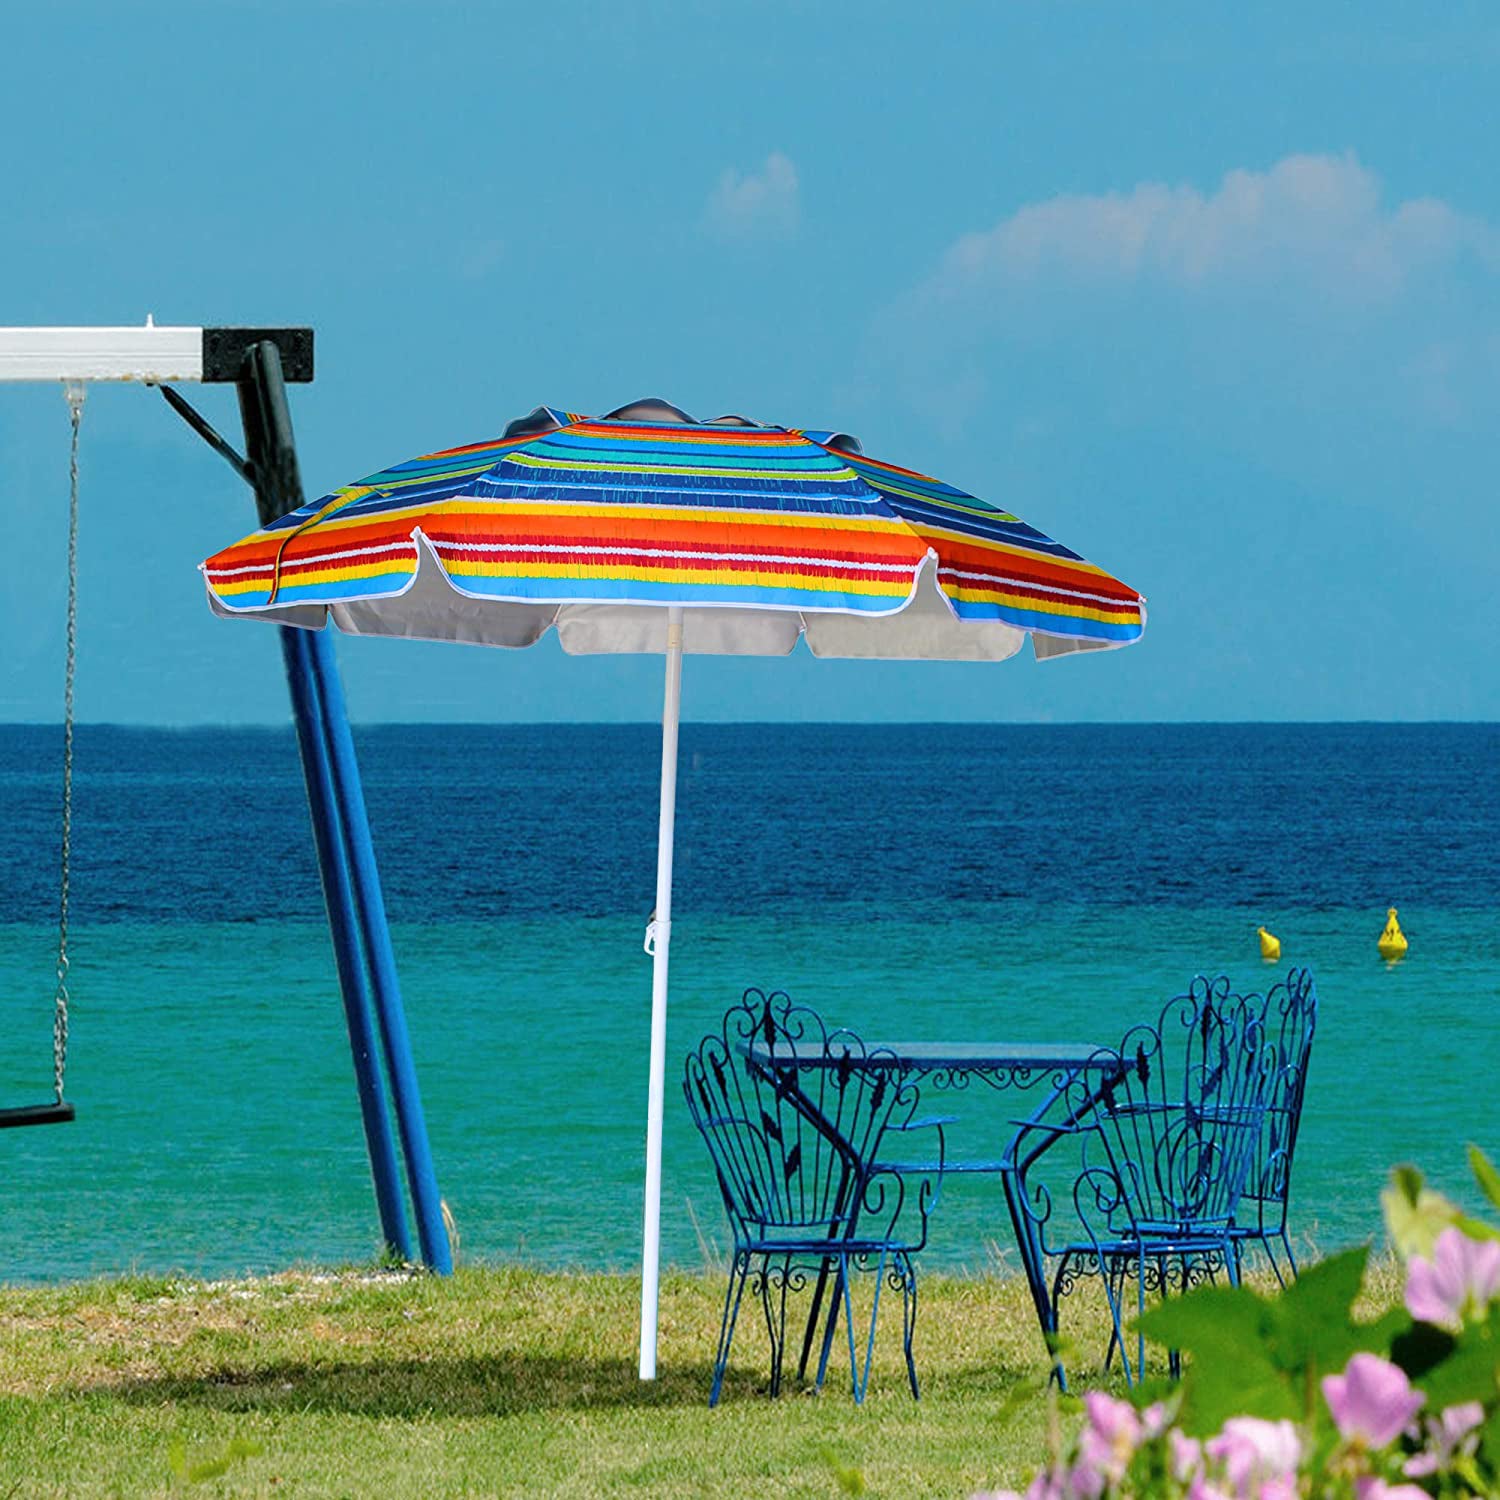 How Big of a Beach Umbrella Do You Need?